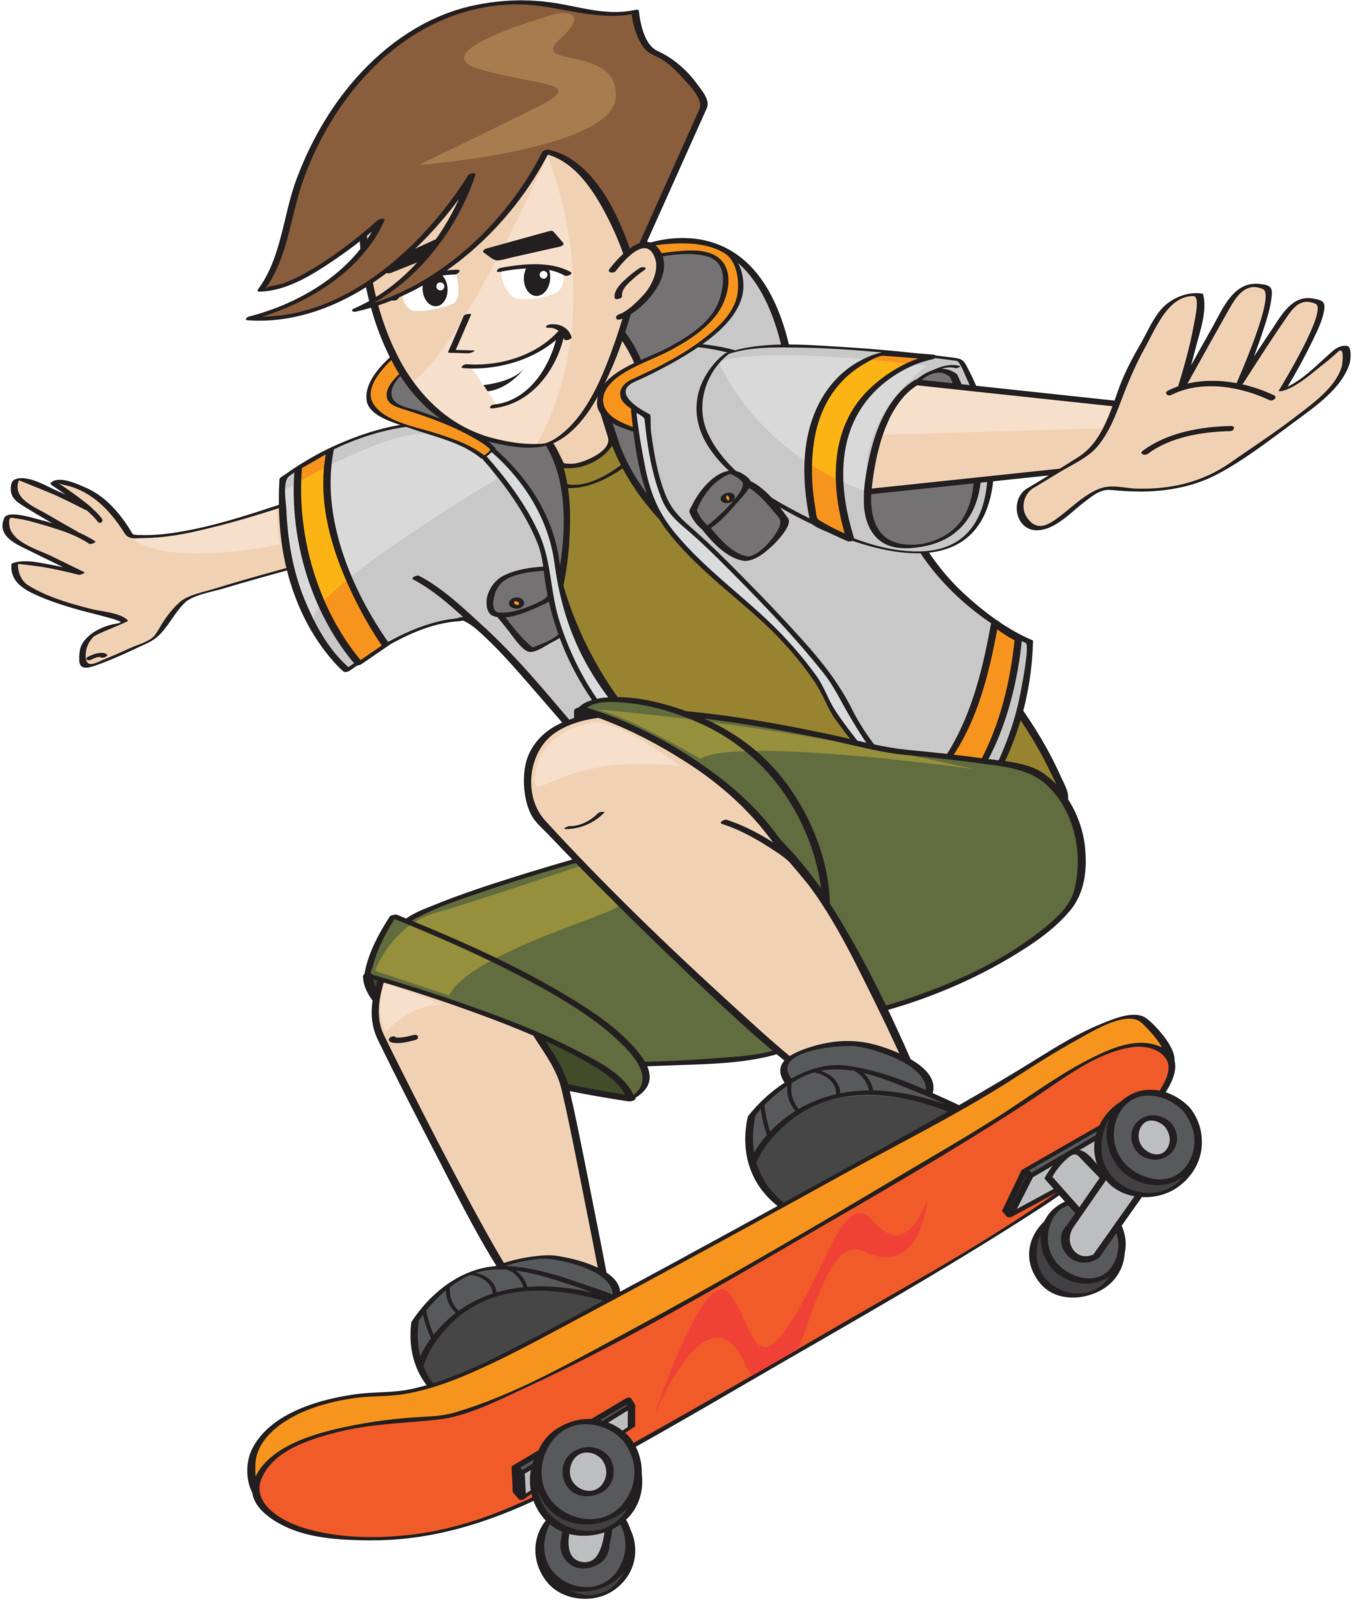 teenage kid on a skateboard